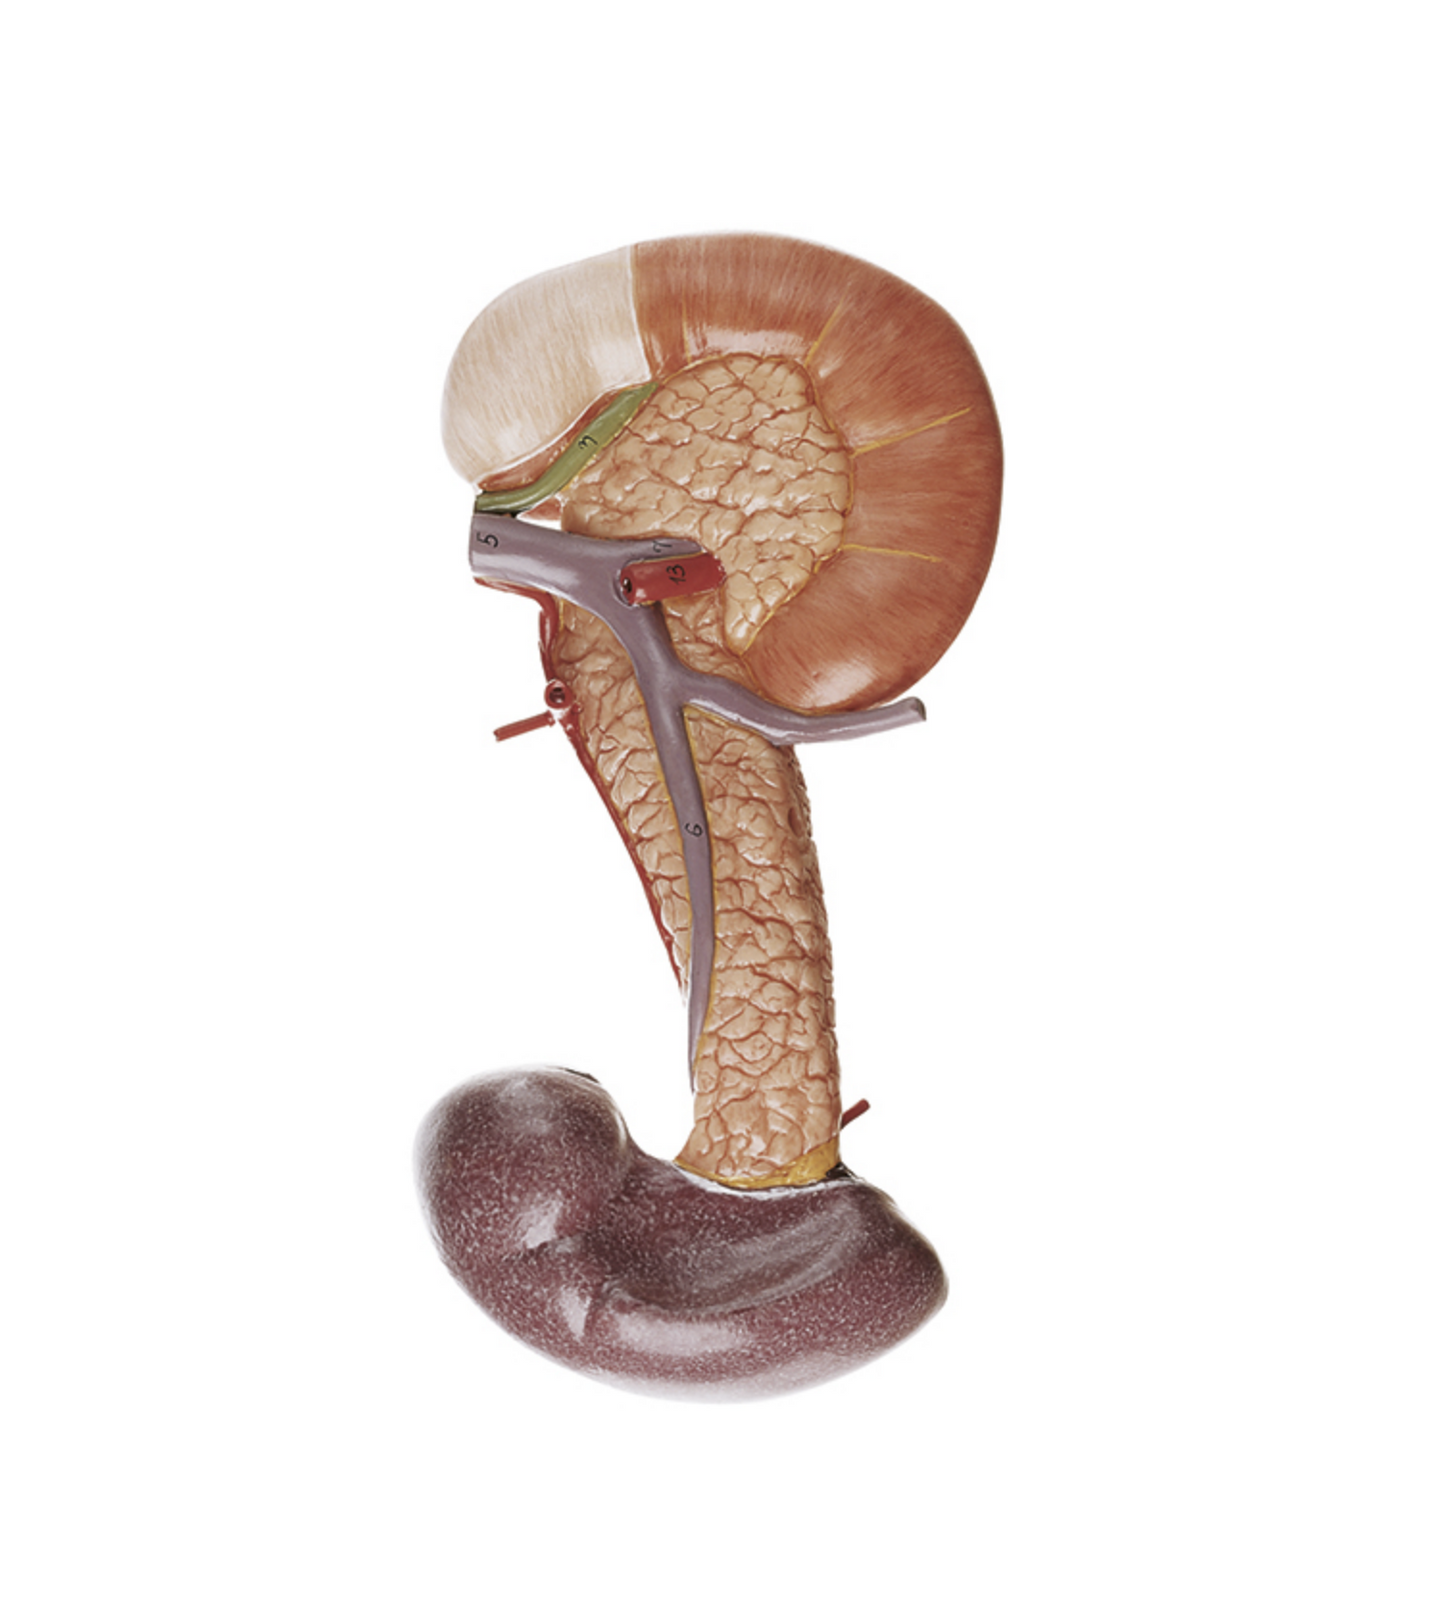 Modell av bukspottkörteln med mjälte och duodenum